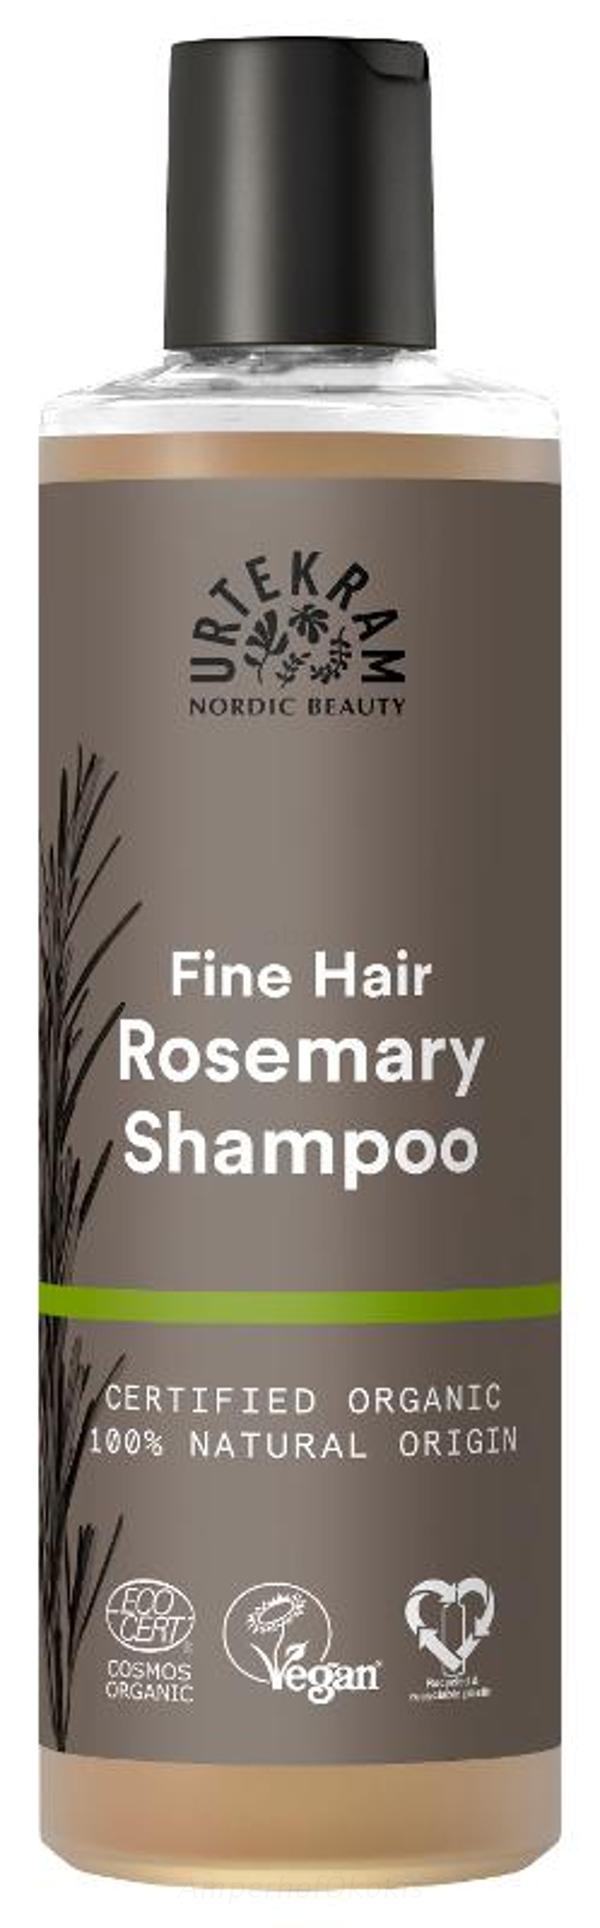 Produktfoto zu Shampoo Rosemary 250 ml